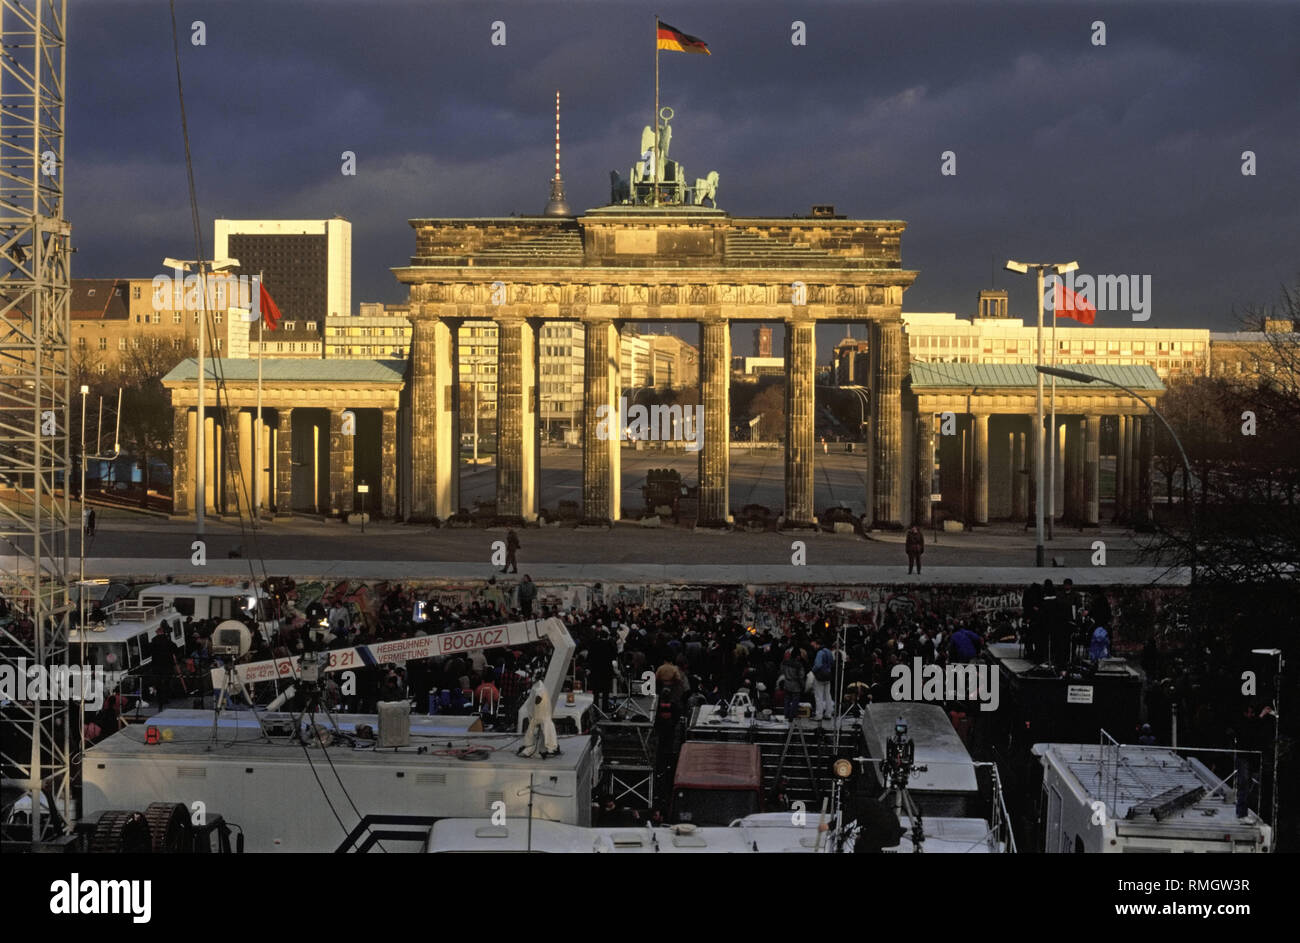 Mehrere Fernsehsender installierte mobile Studios und Sendeanlagen an der Berliner Mauer am Brandenburger Tor. Die symbolische Bilder werden erwartet, wenn die Grenze an dieser Stelle abgerissen ist. Grenzkontrollstellen werden nur am Ende Dezember 1989, am Brandenburger Tor. Stockfoto